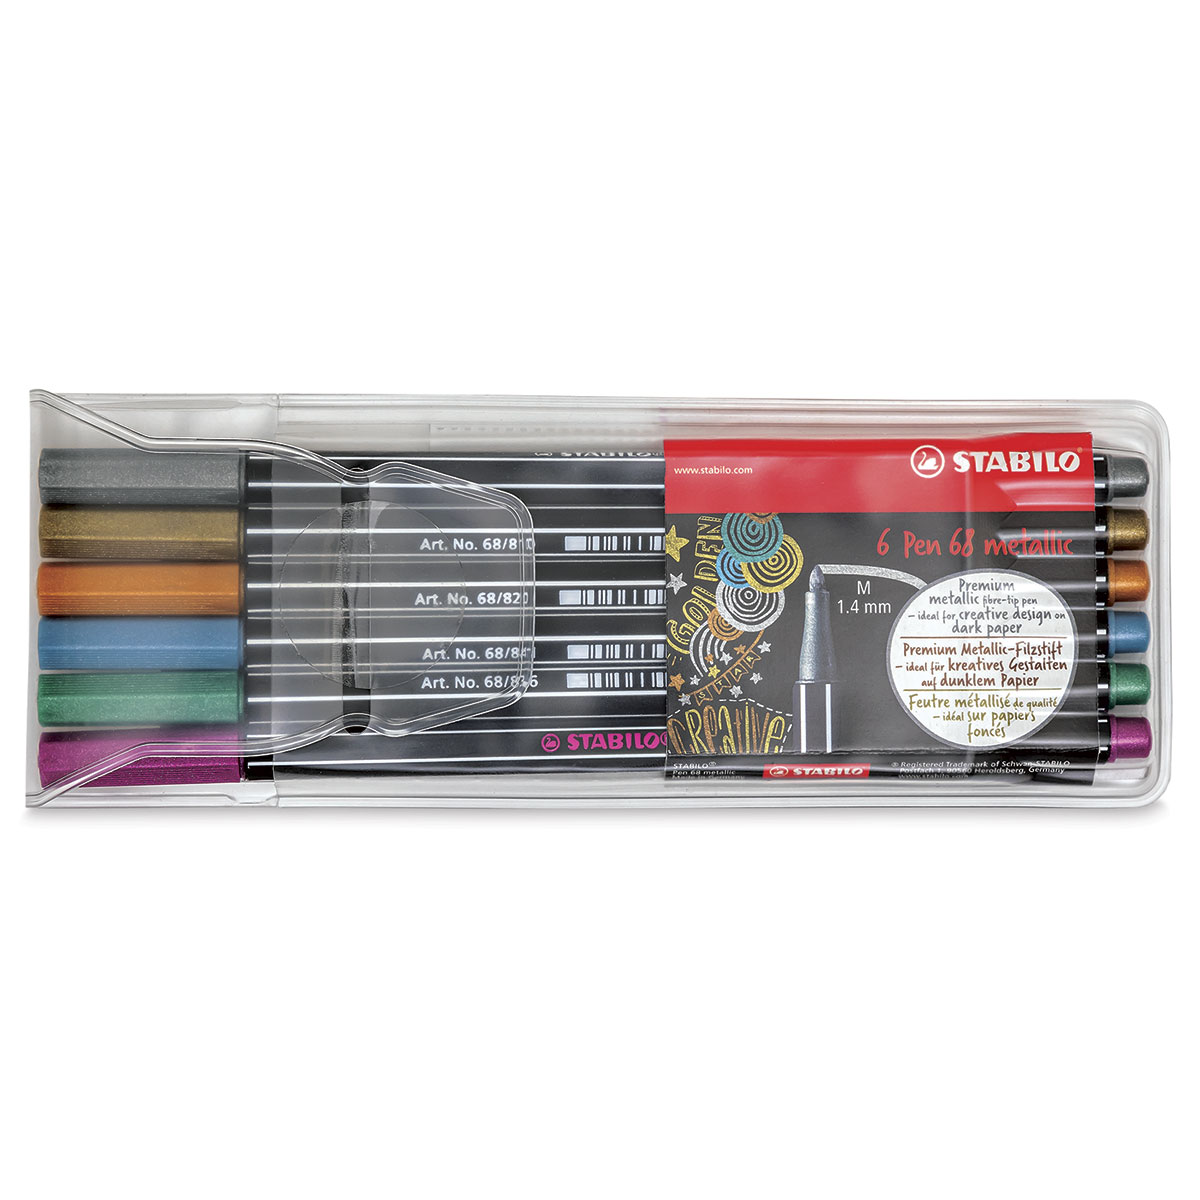 Ondergedompeld In zicht mouw Stabilo Pen 68 Metallic Pens and Sets | BLICK Art Materials